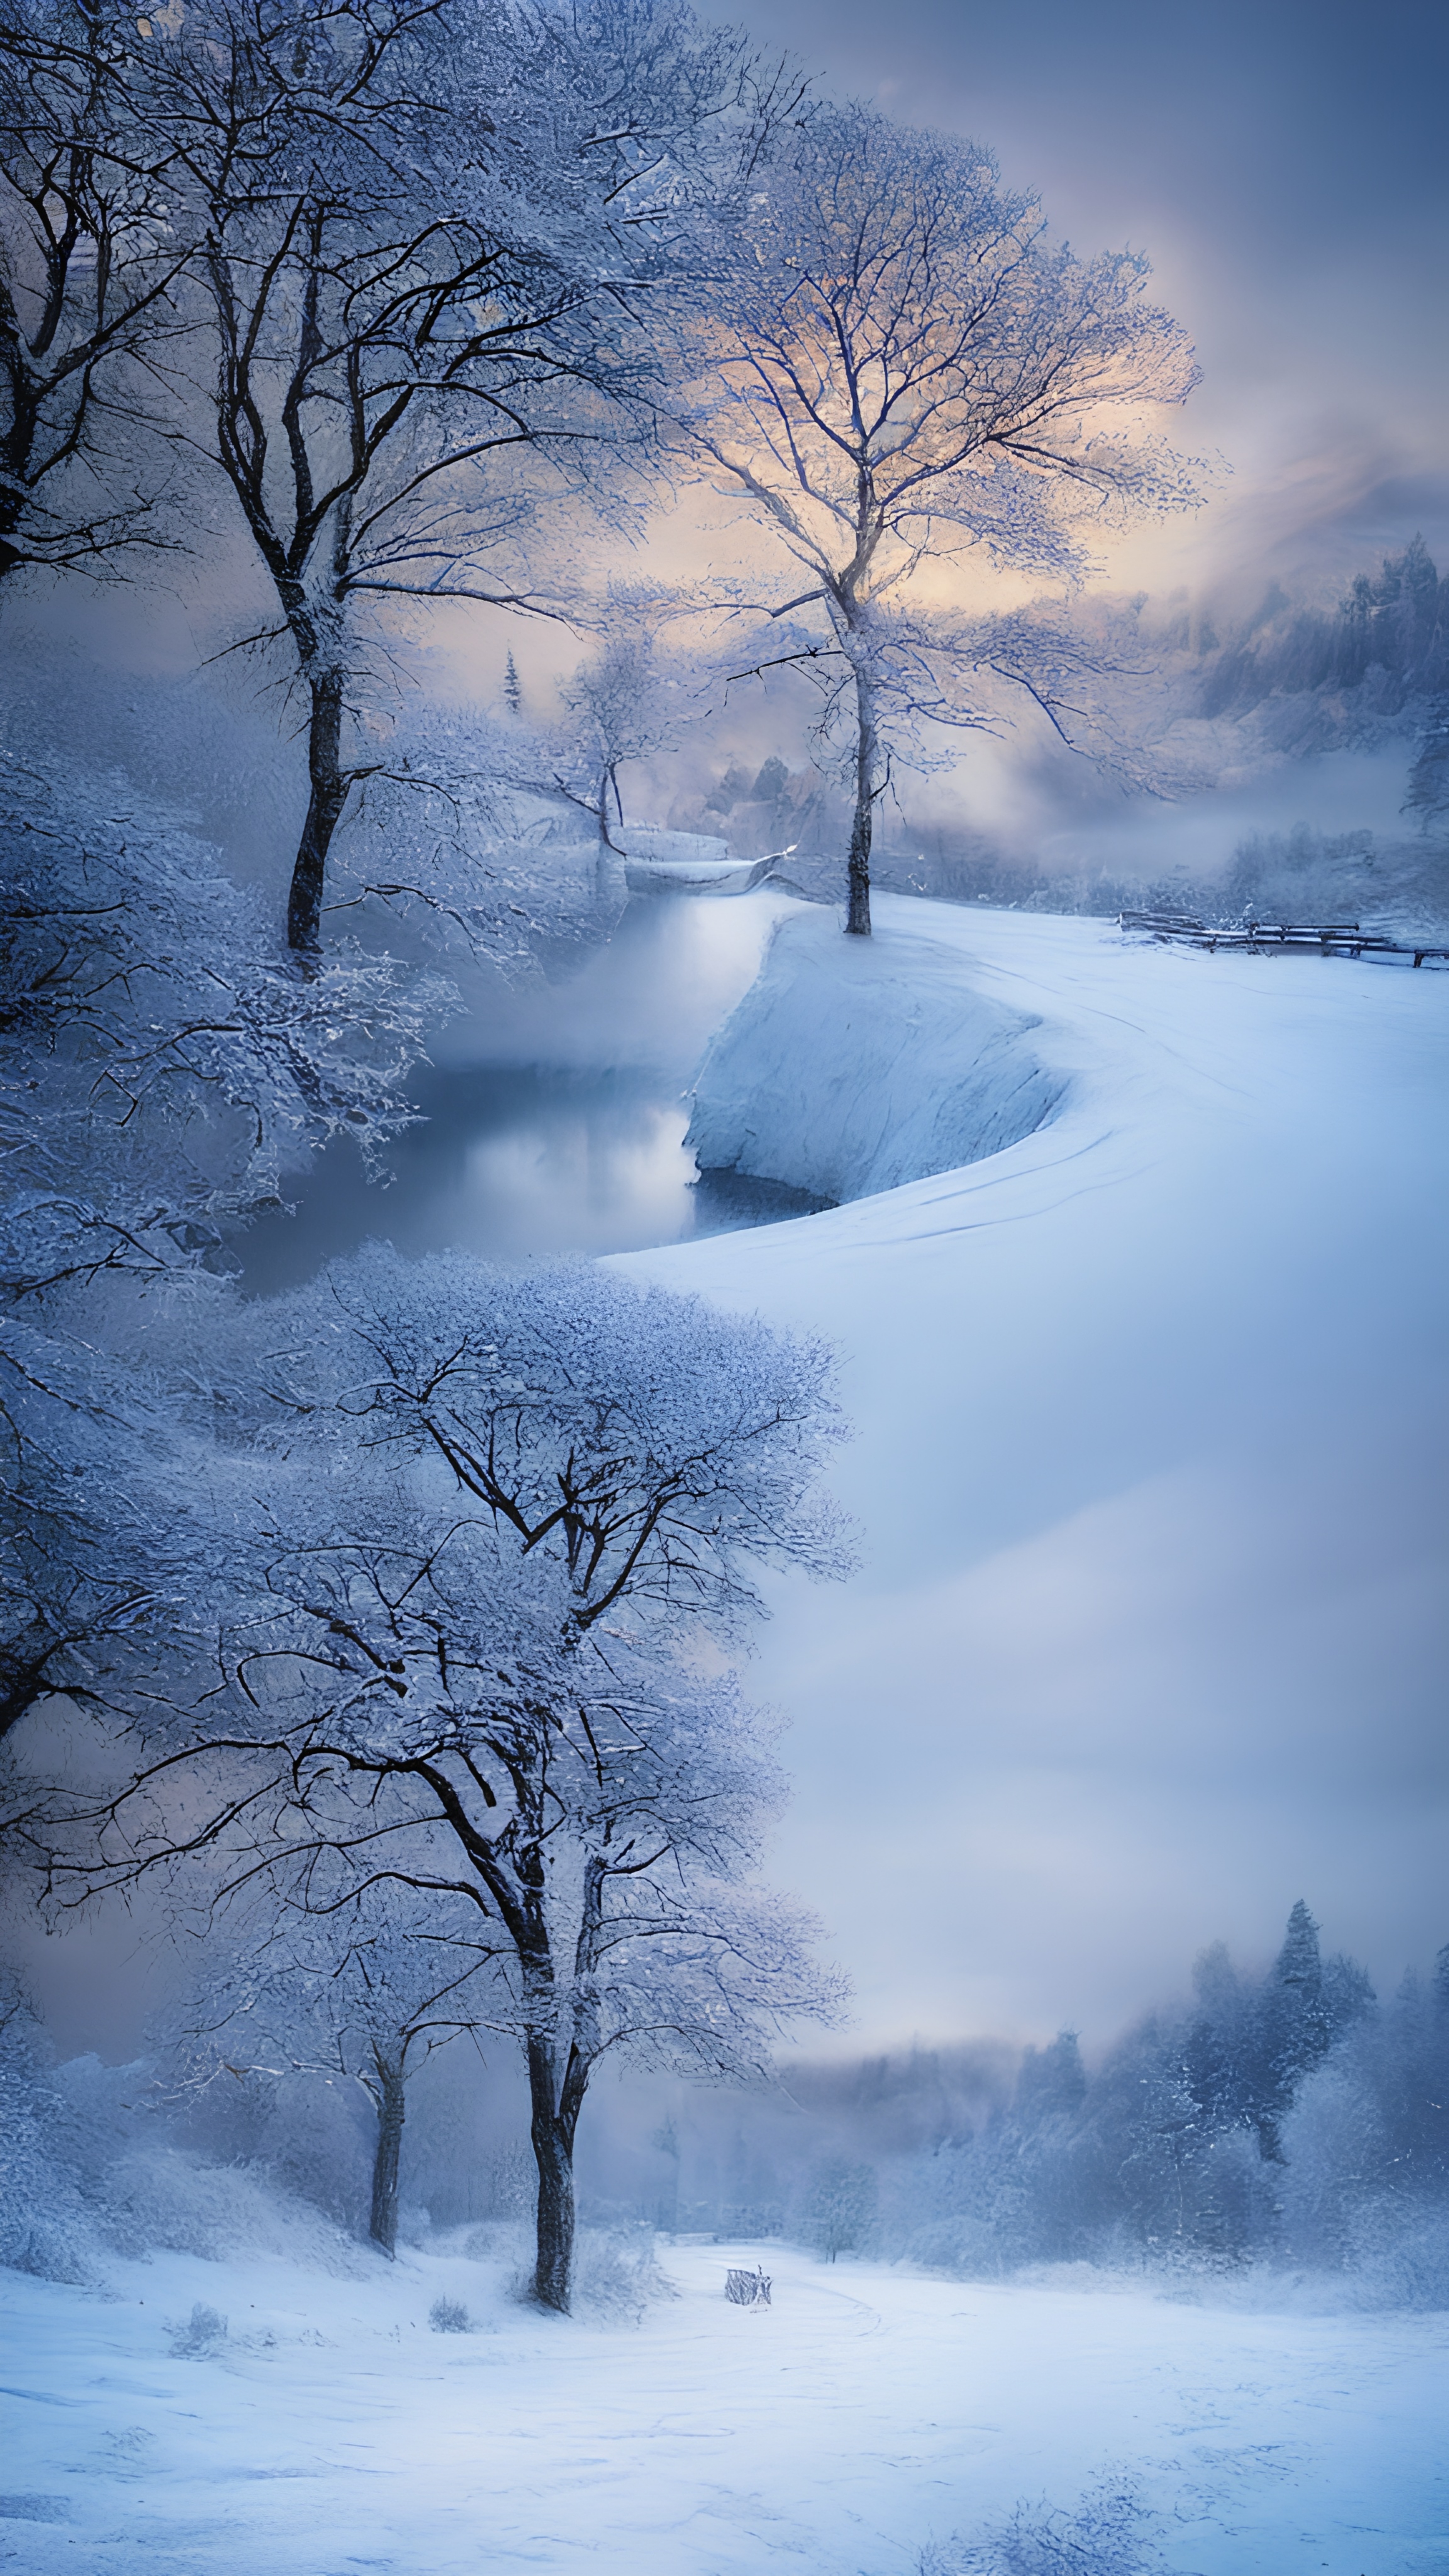 皑皑白雪漫天飞舞,漂亮的雪花,是神奇的大自然给人类的奇特风景